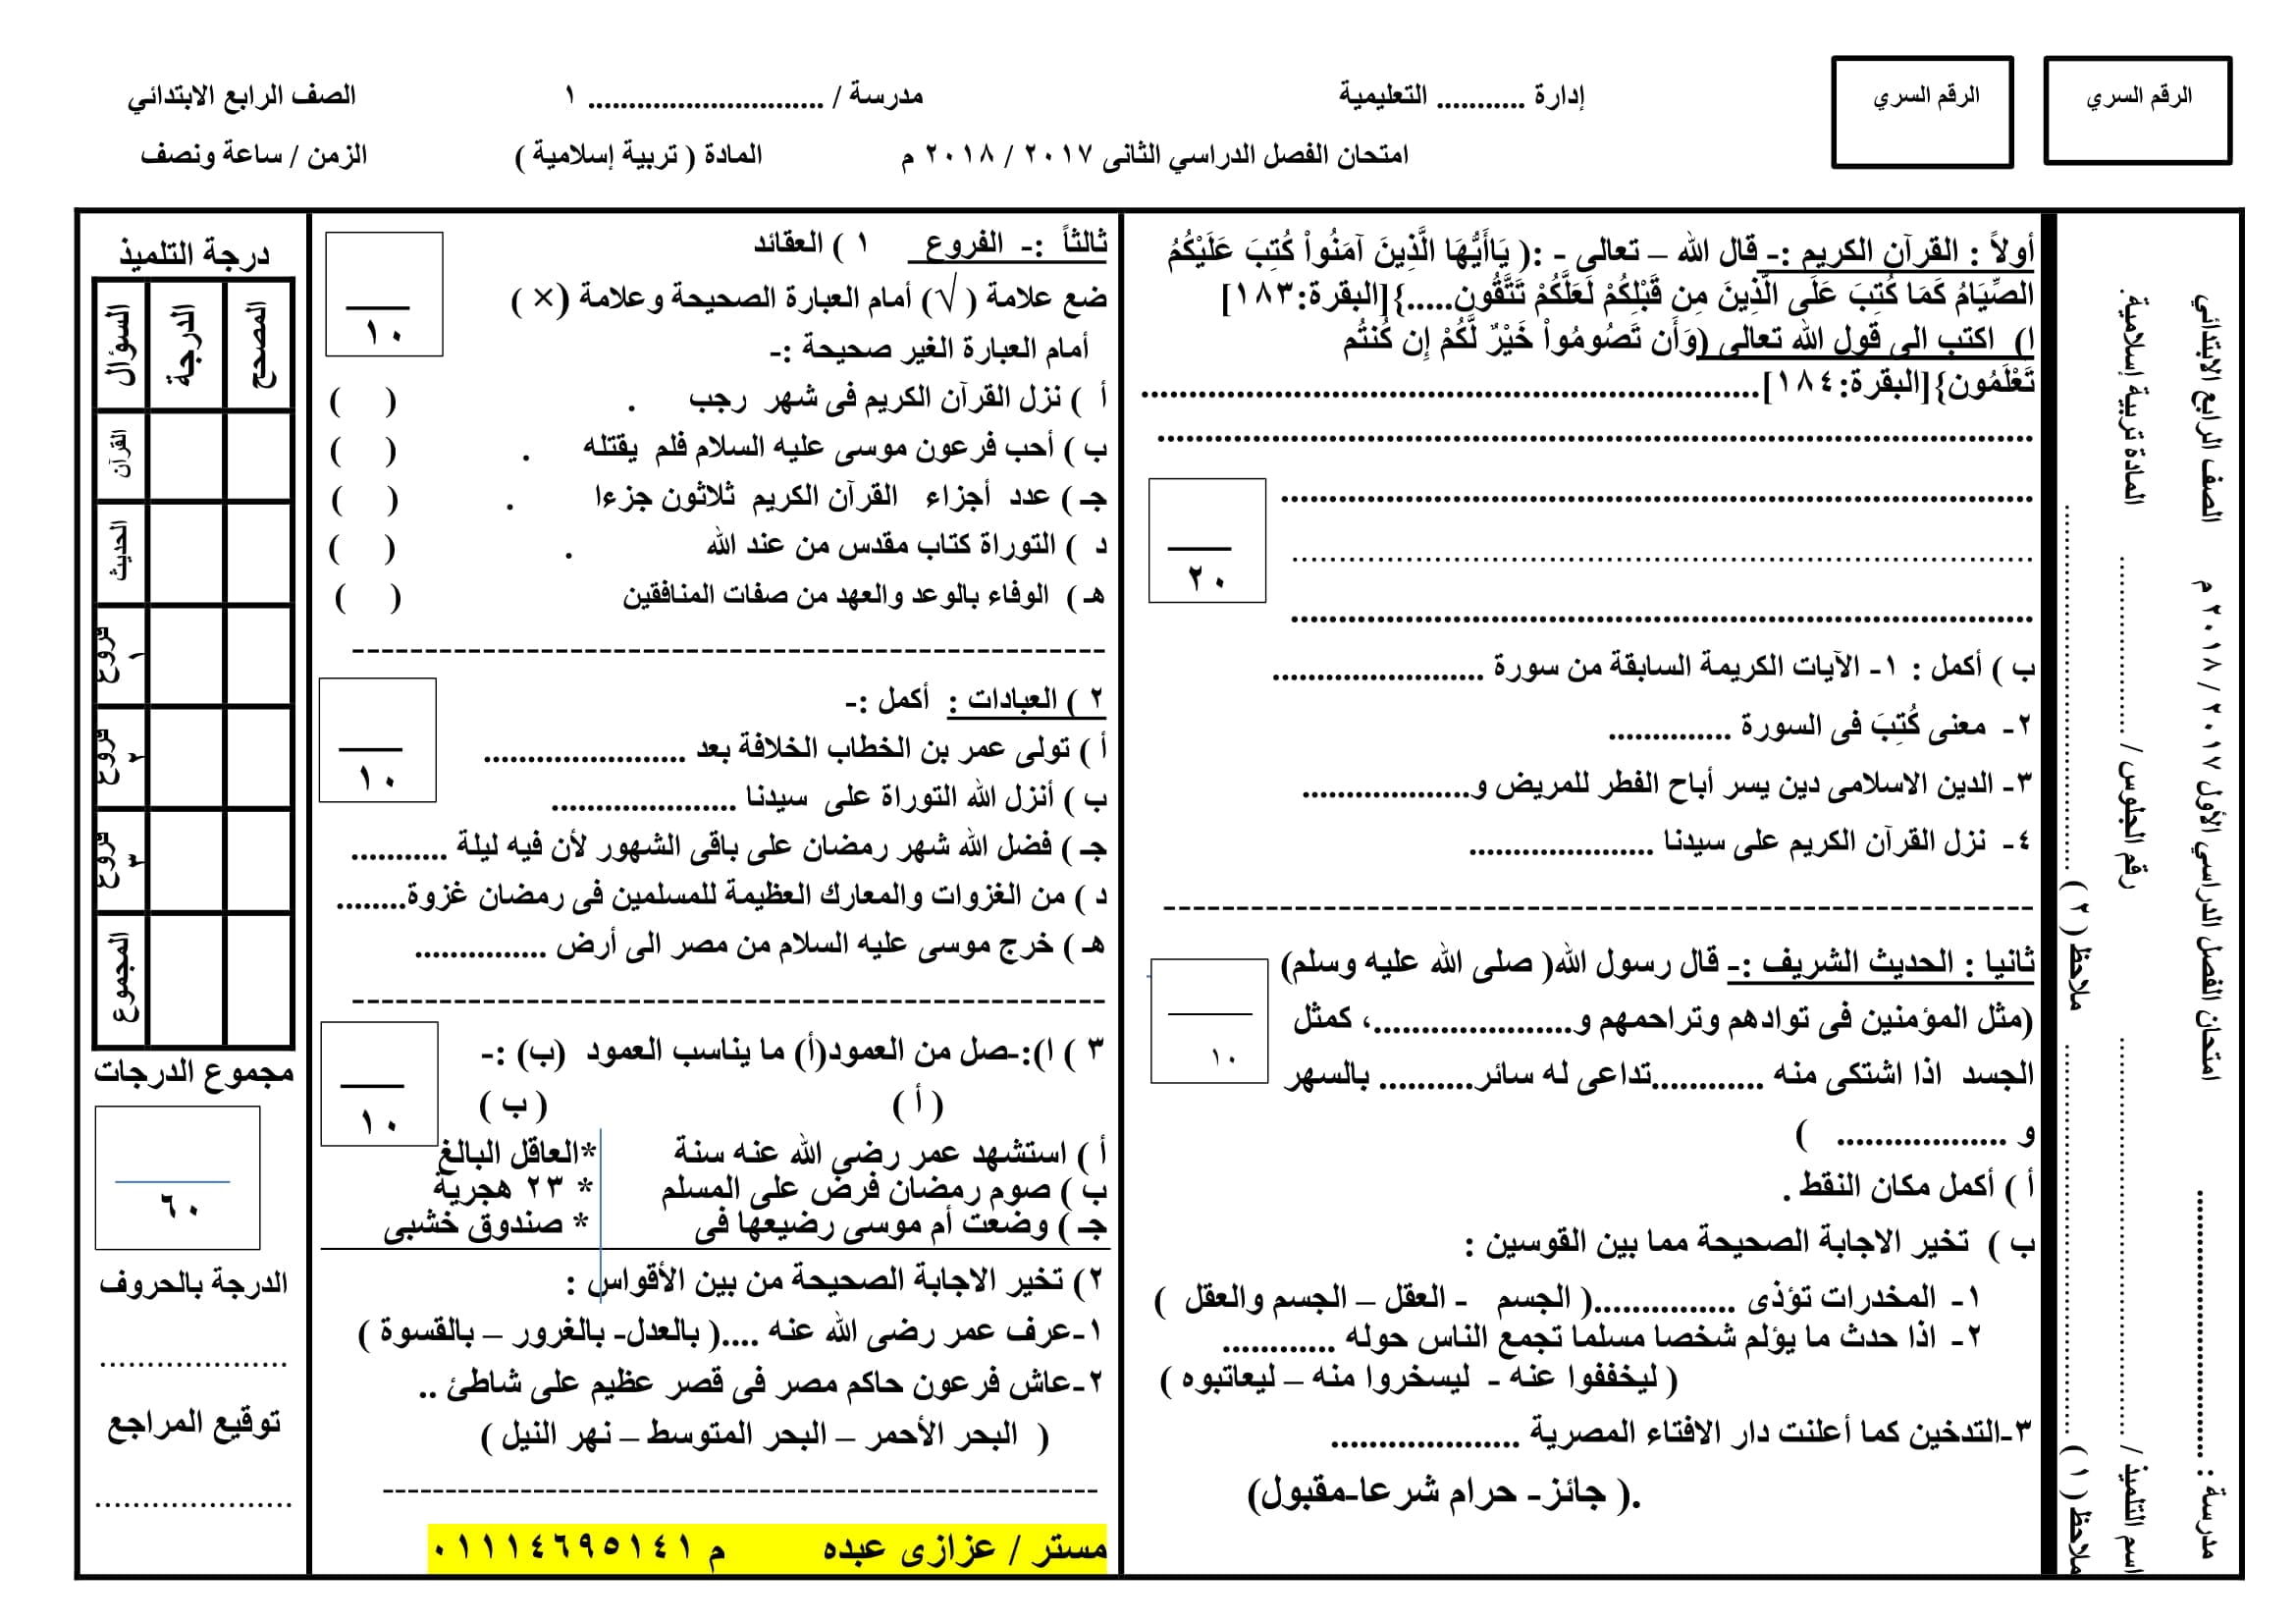 نموذج امتحان بتوزيع الدرجات فى التربية الدينية الاسلامية للصف الرابع الابتدائى الترم الثانى